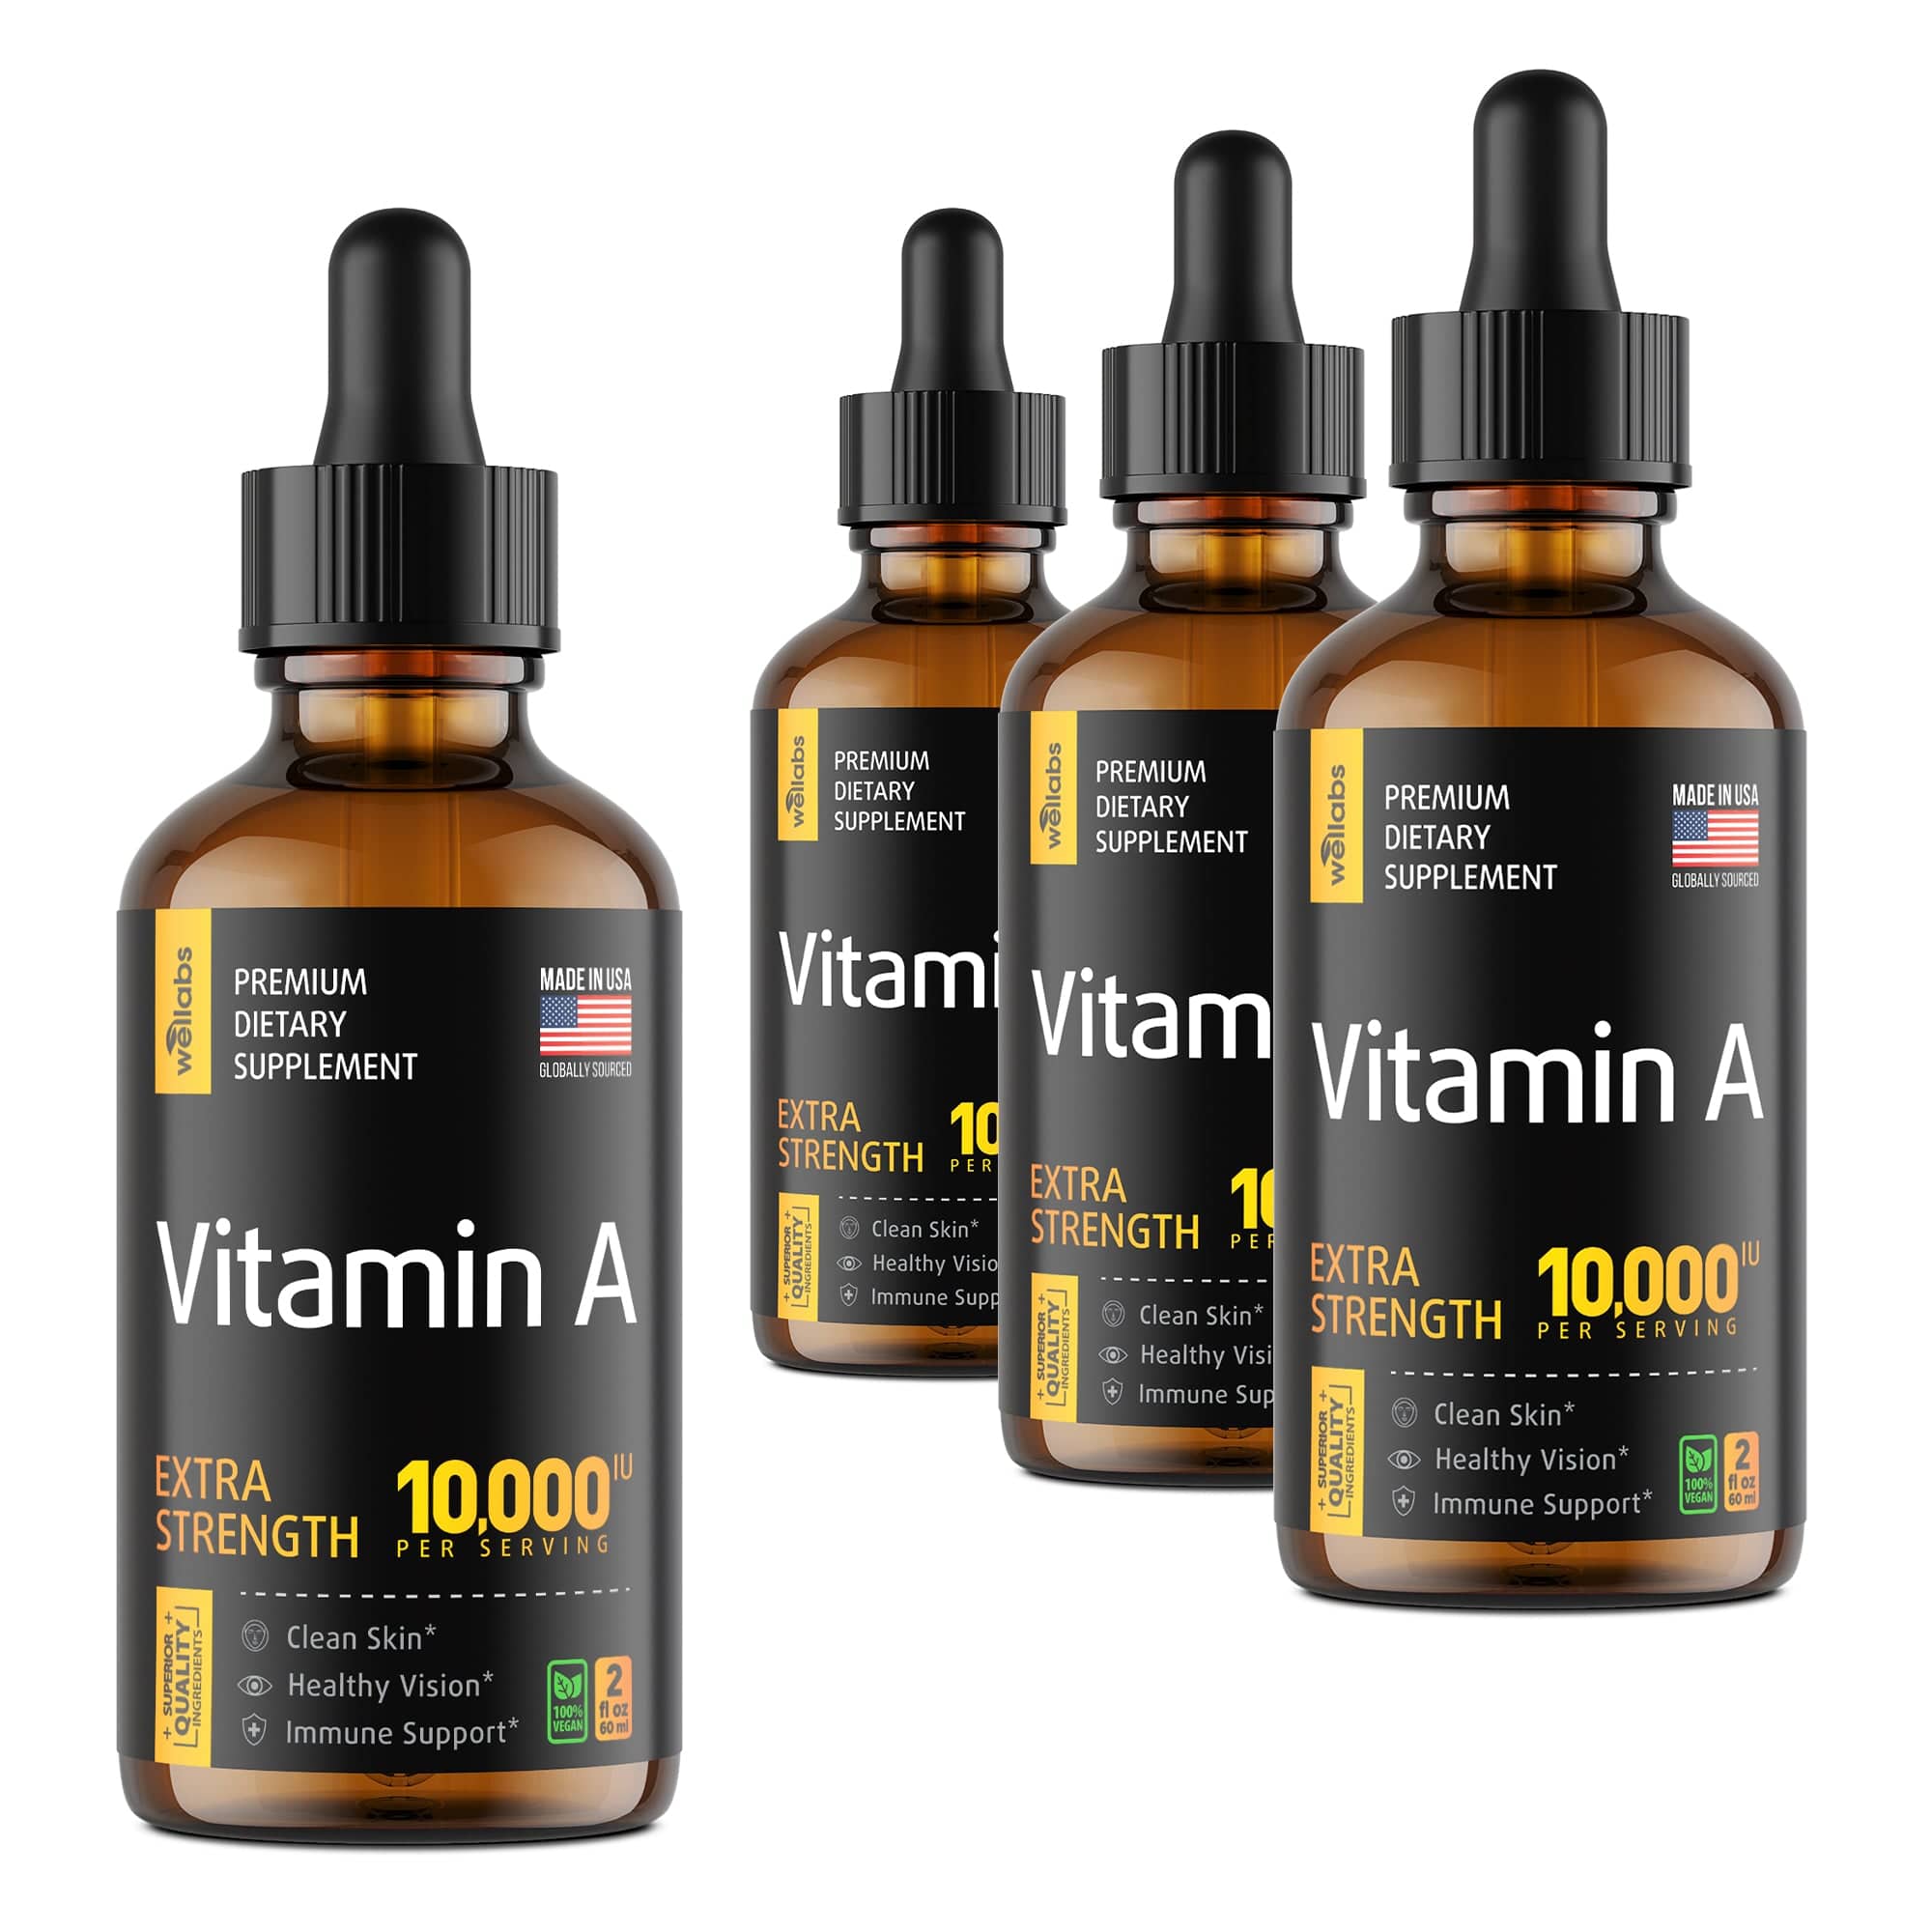 Vitamin A Drops - Buy 3 Get 1 Free